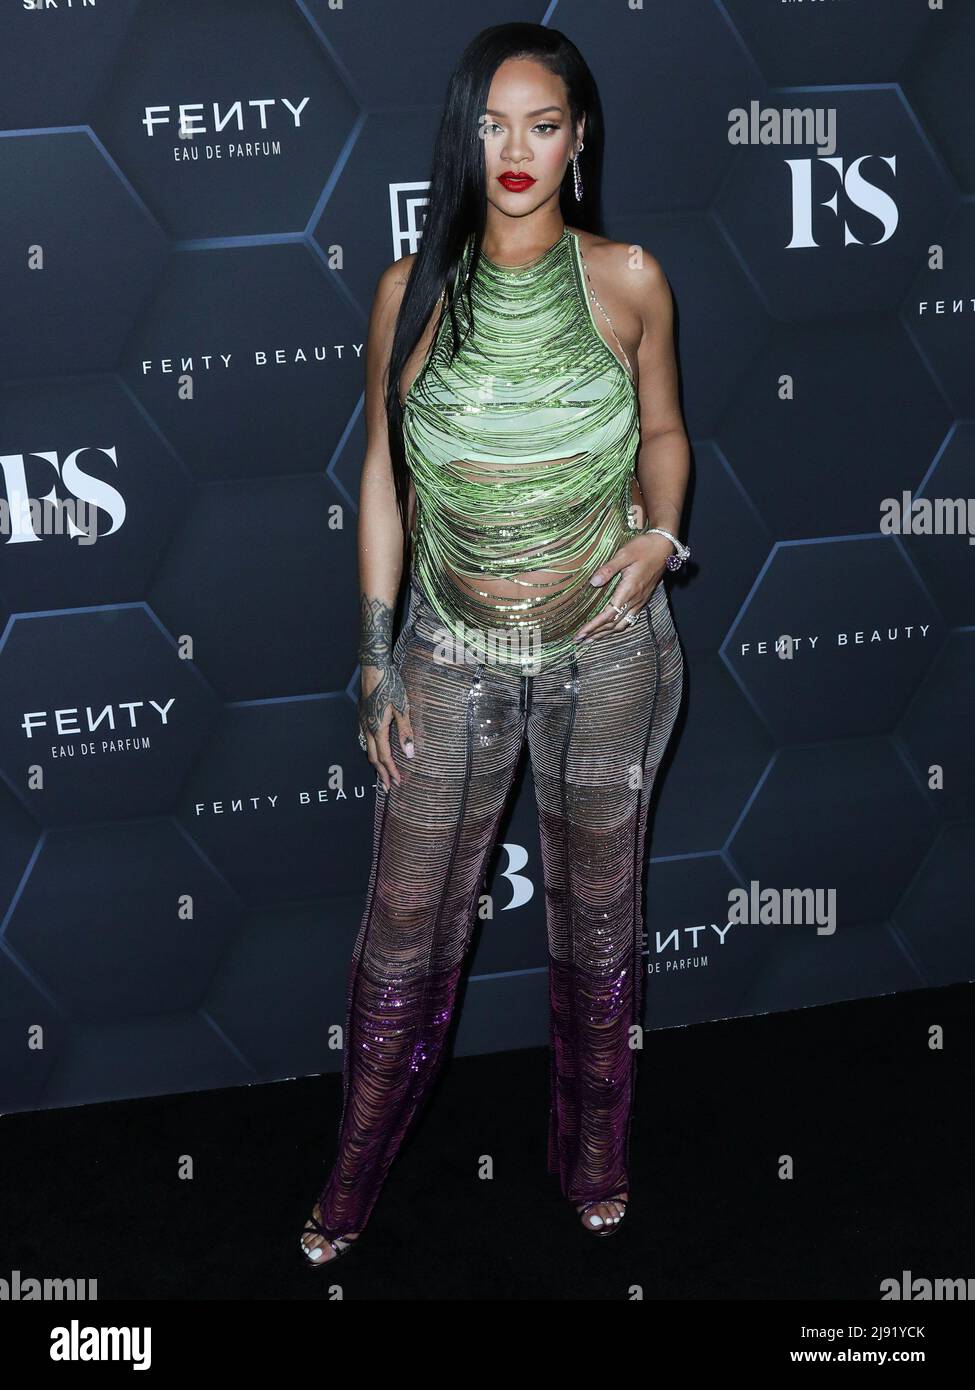 Rihanna family immagini e fotografie stock ad alta risoluzione - Alamy